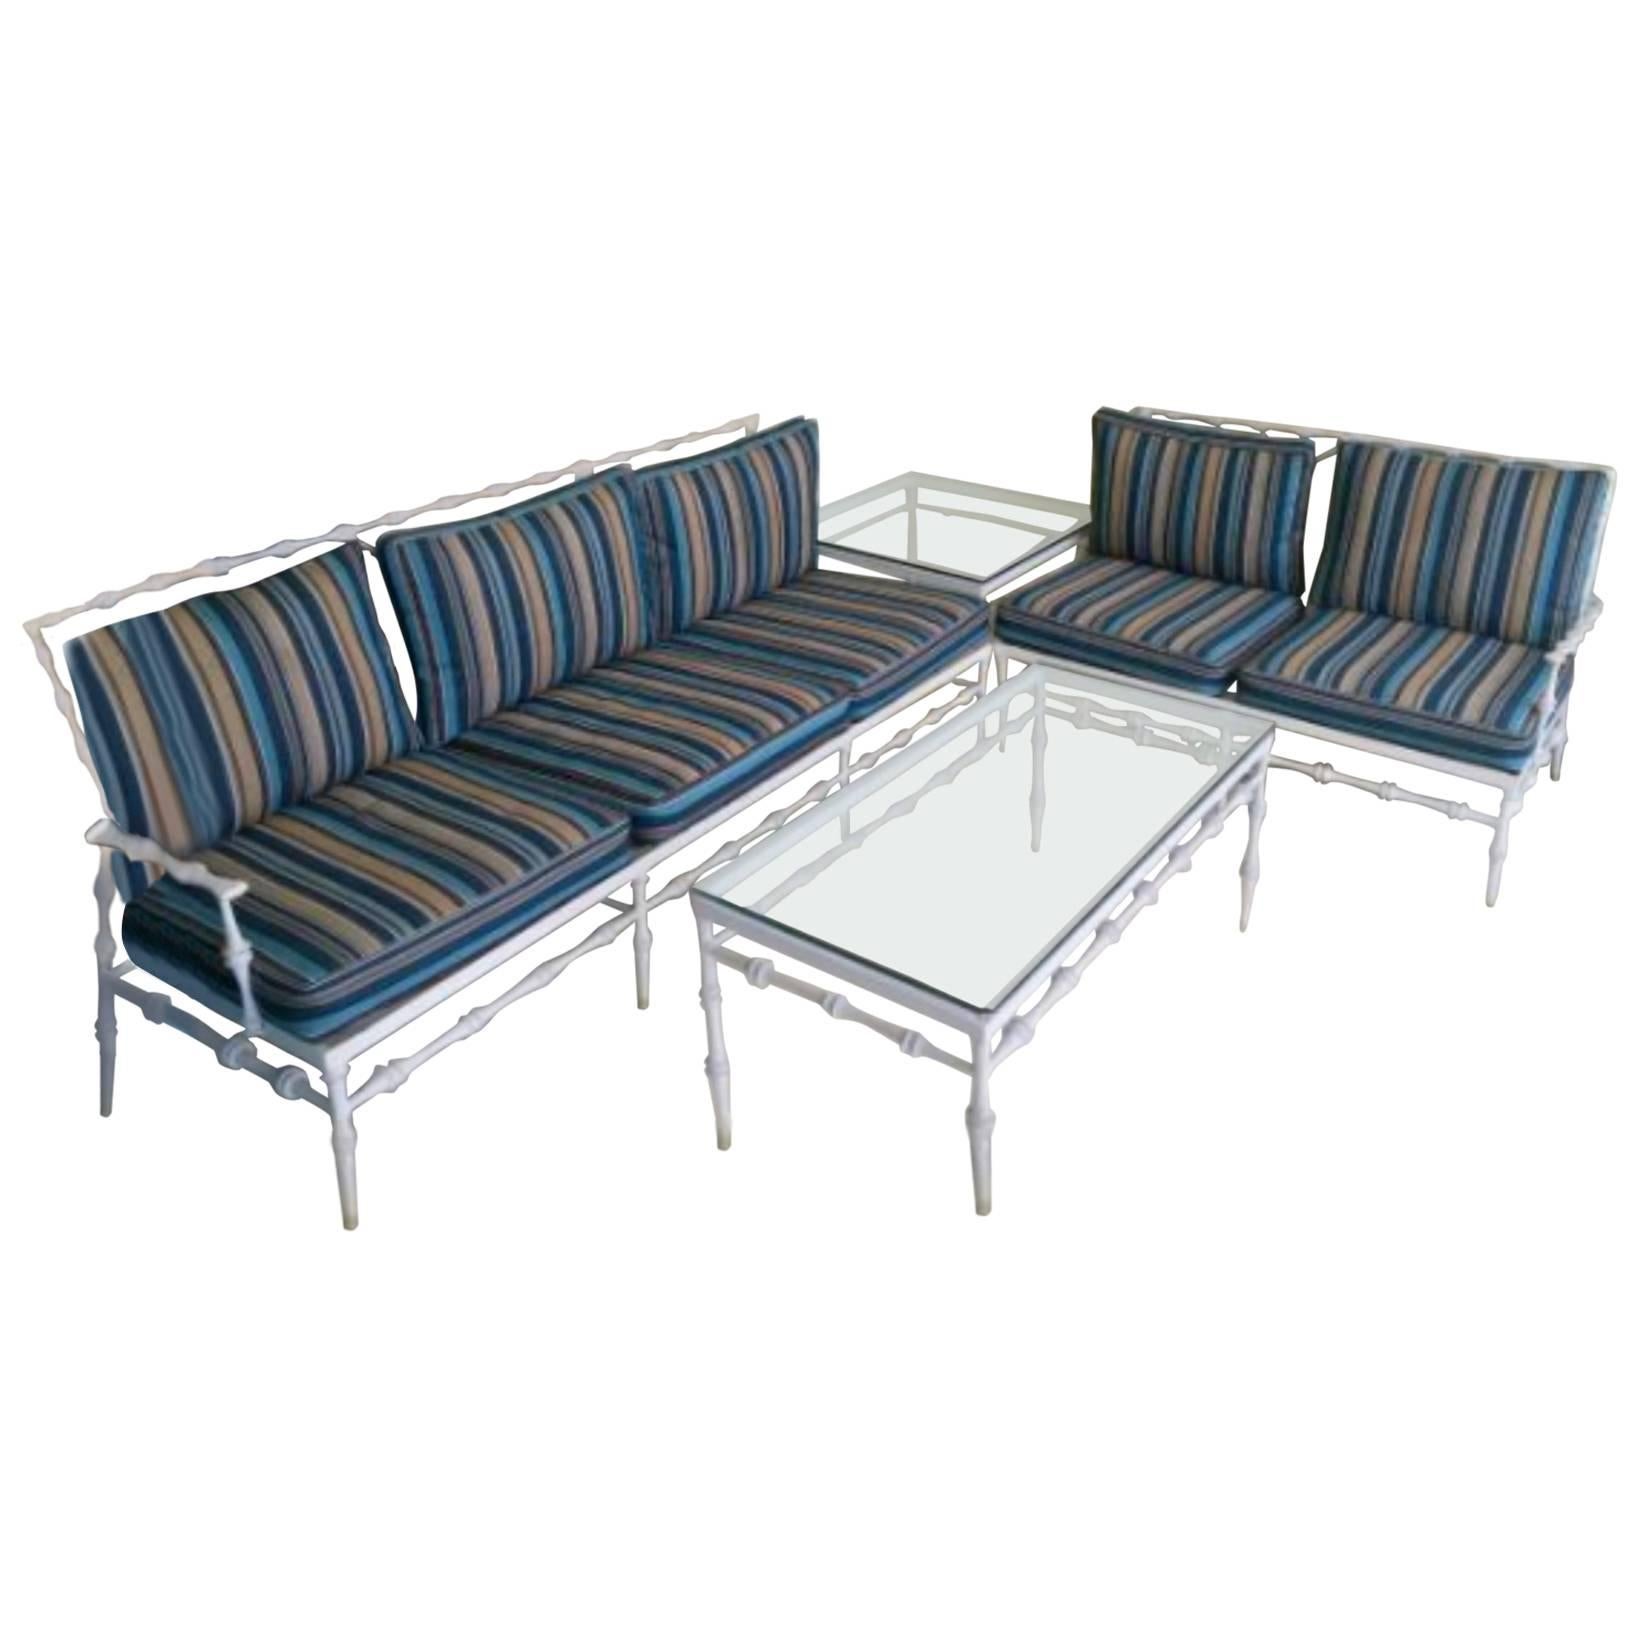 4 Pc Phyllis Morris Patio Set Sofa Sette Coffee & End Table Aluminum Porch Metal